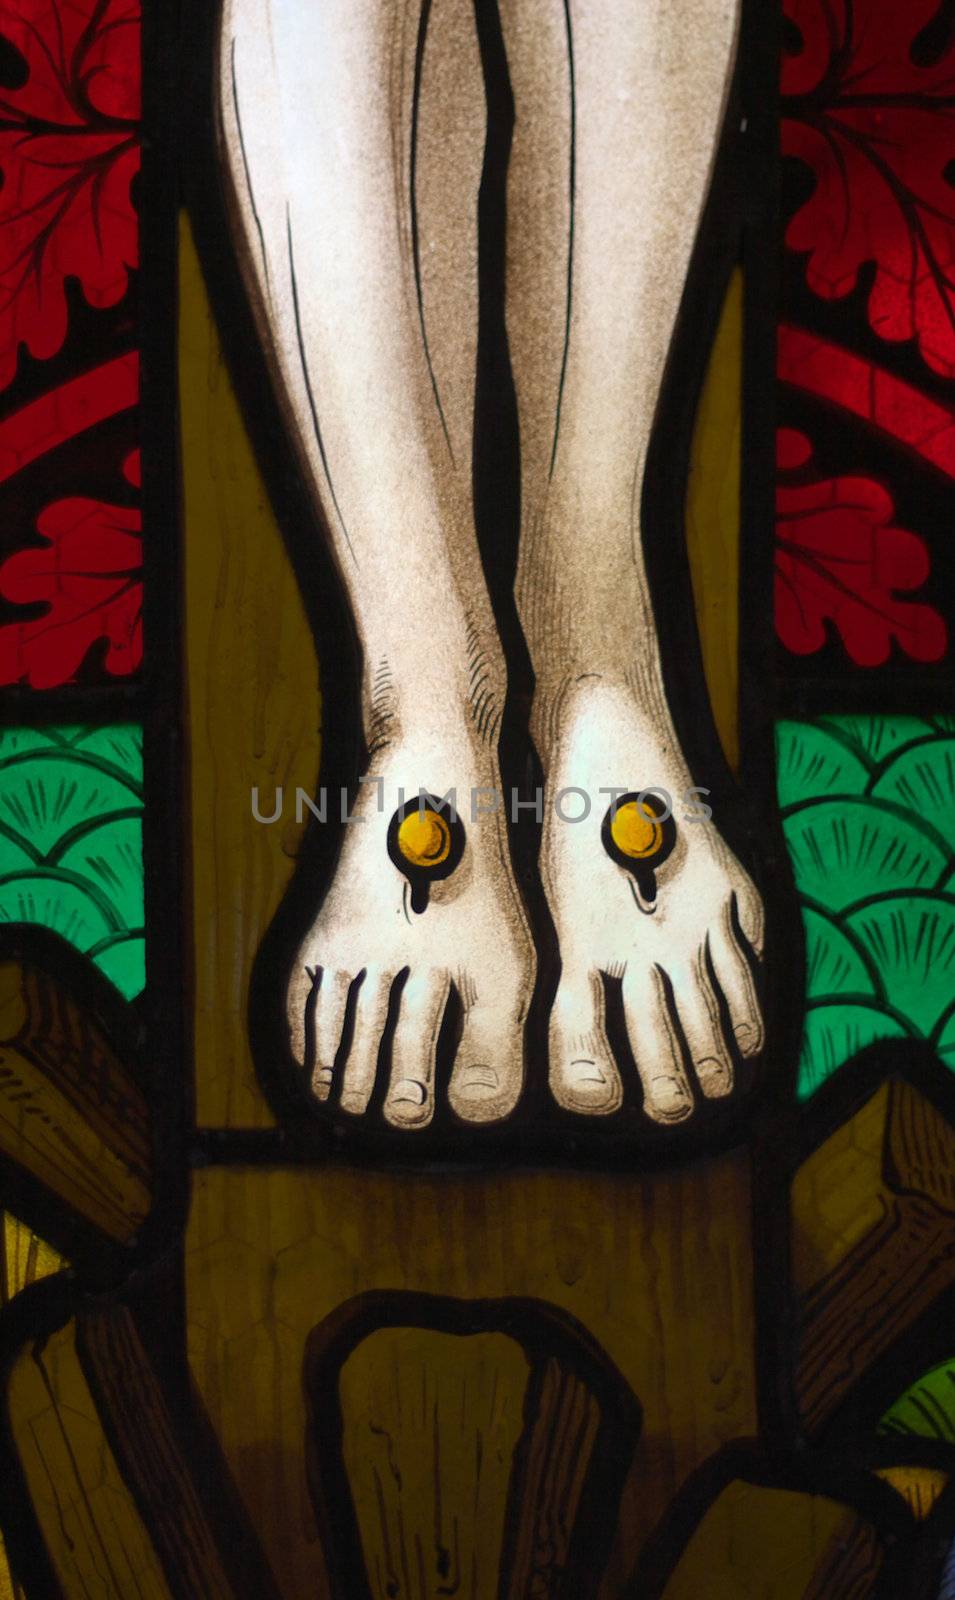 Jesus' feet on the cross by hospitalera